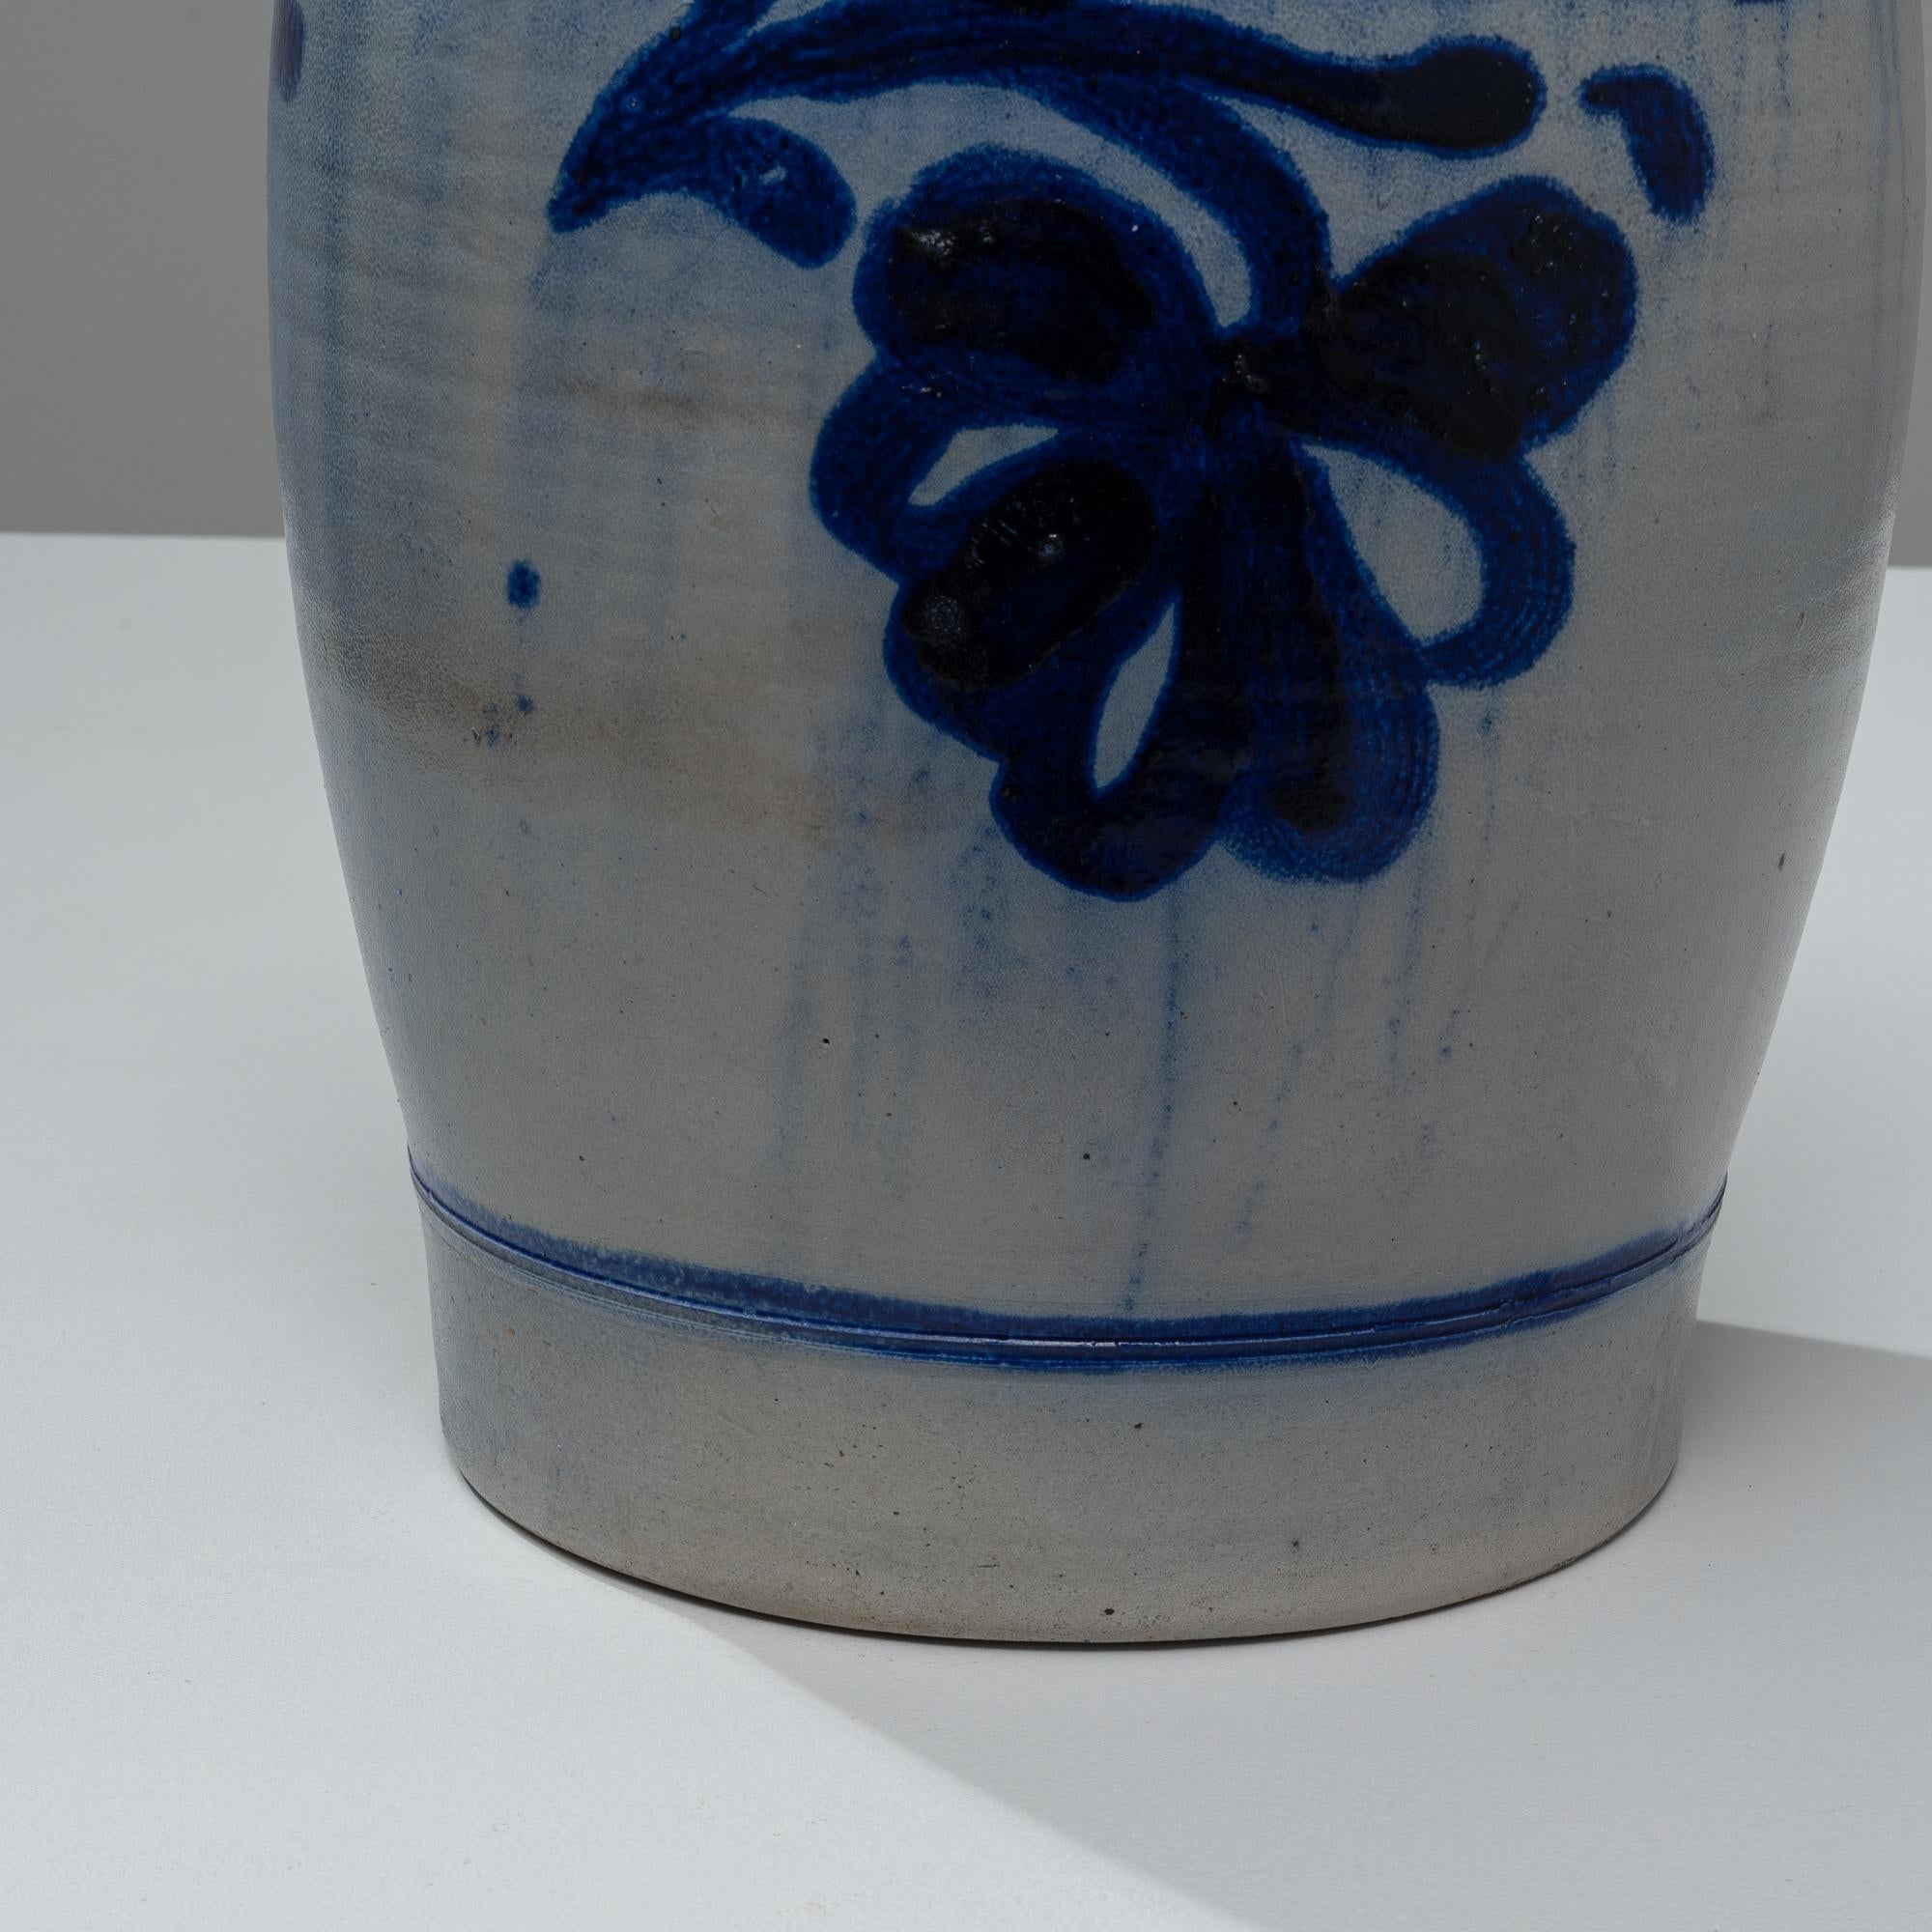 Ce pot en céramique belge du début des années 1900 est un chef-d'œuvre d'élégance rustique et de charme vintage, idéal pour ceux qui apprécient la beauté de l'artisanat. Le pot présente un corps robuste et arrondi, orné de motifs floraux bleus